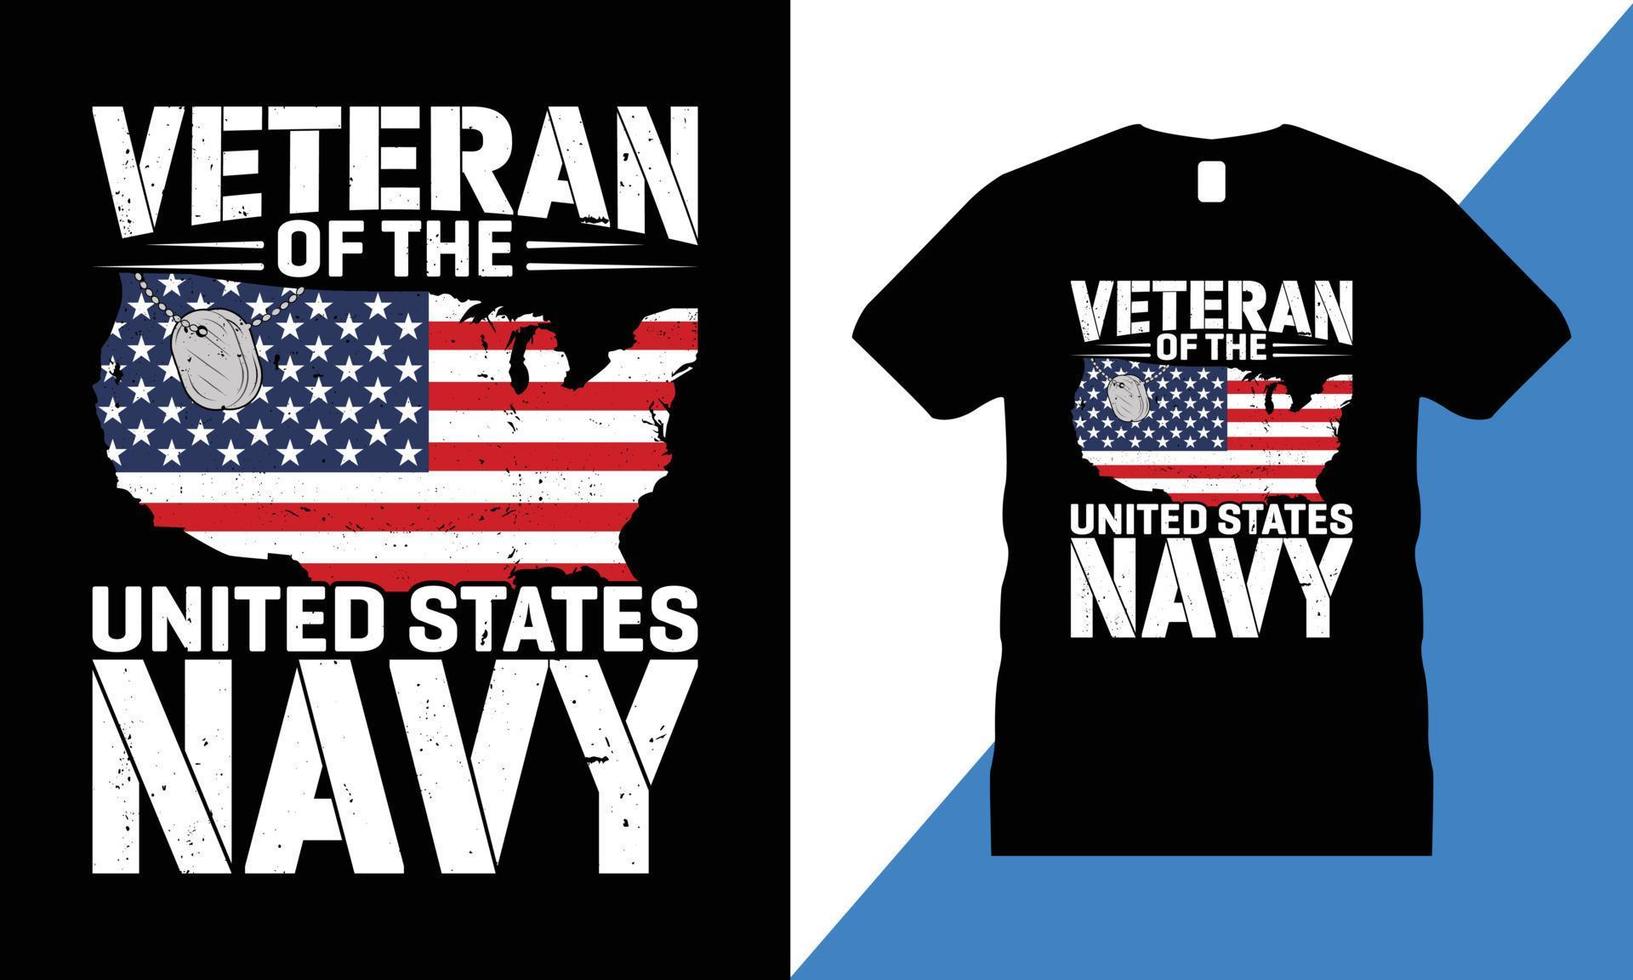 veteraan grafisch t-shirt ontwerp vector. Verenigde Staten van Amerika, t shirt, leger, vrijheid, vlag, leger, gedenkteken, vector